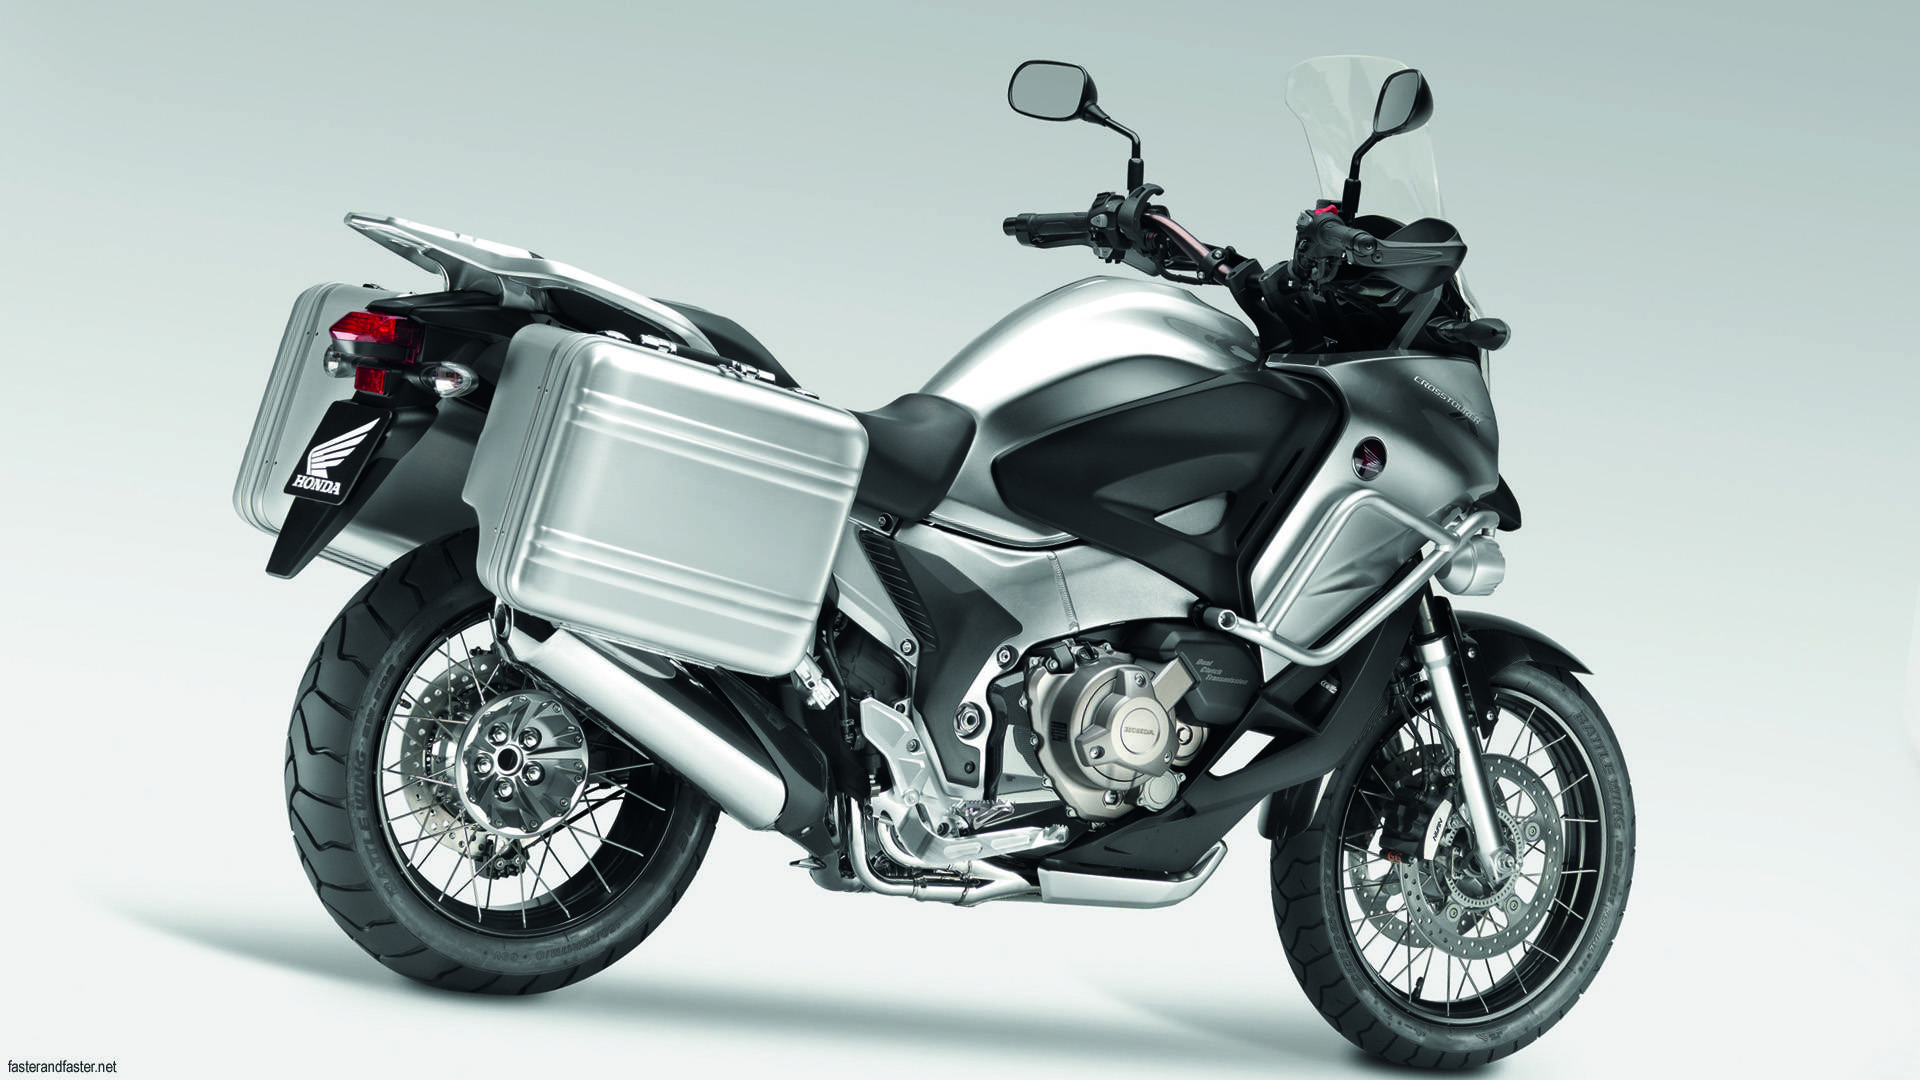 Honda vfr 1200 x crosstourer - обзор, технические характеристики | mymot - каталог мотоциклов и все объявления об их продаже в одном месте